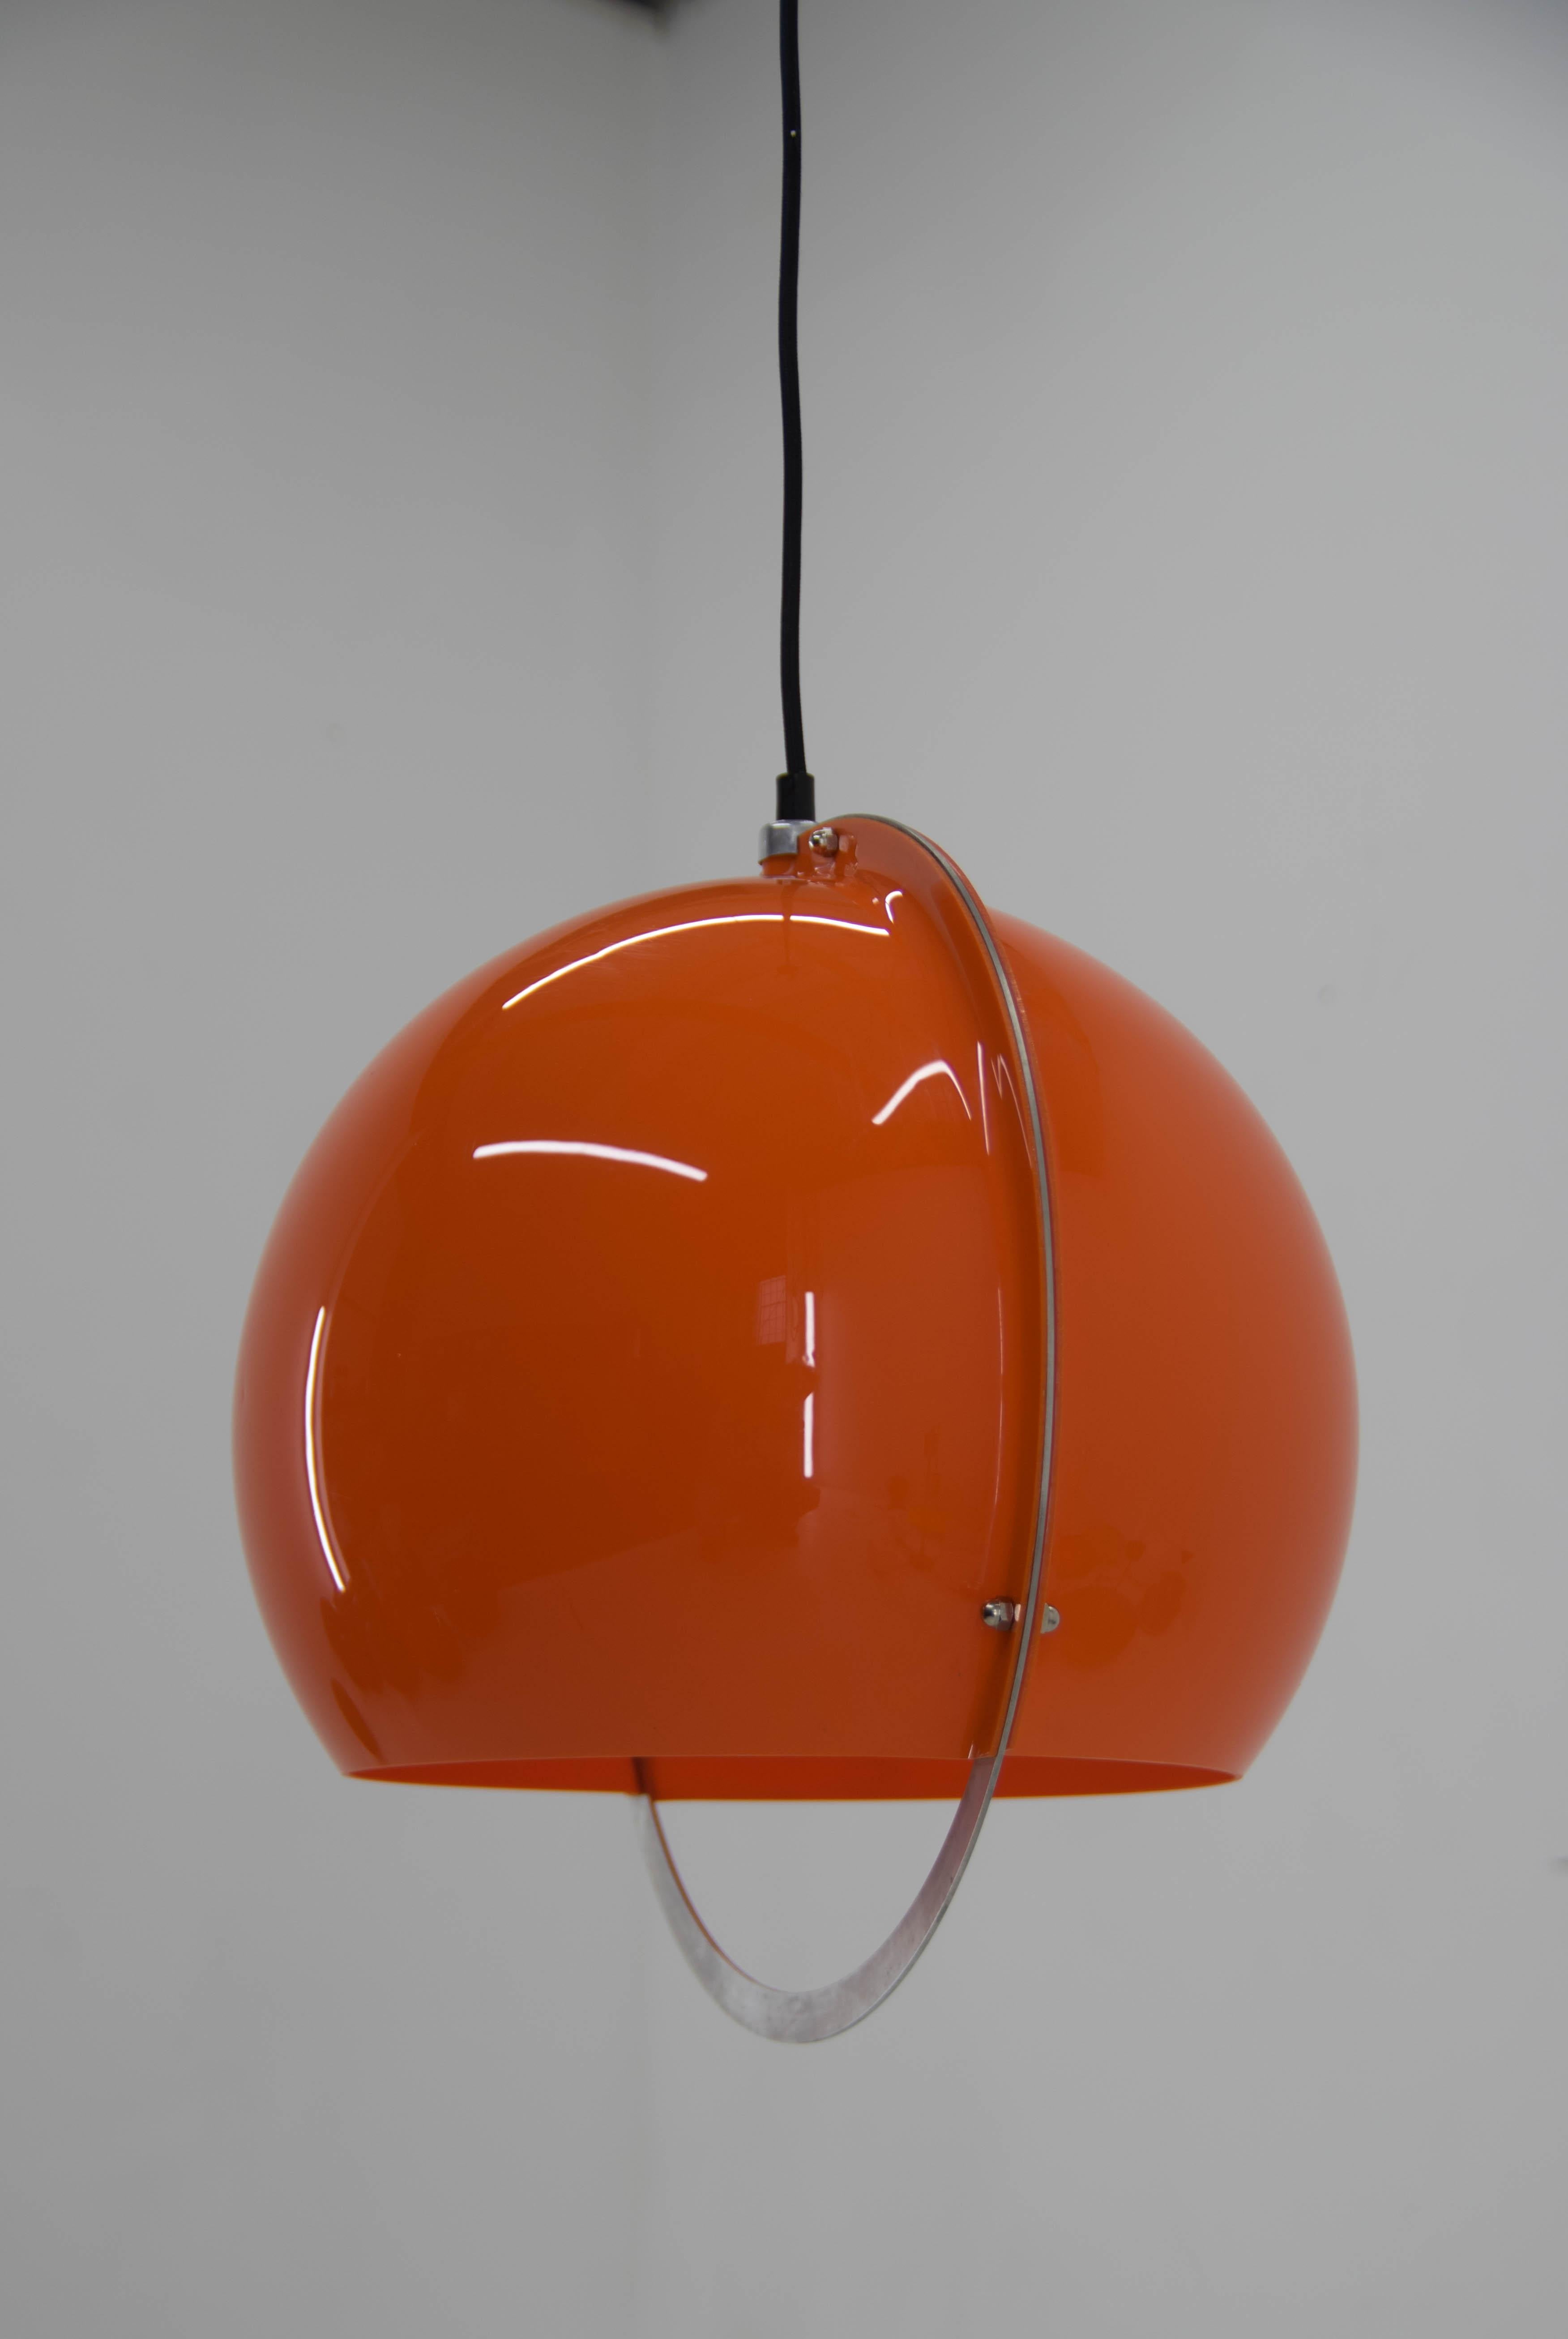 Minimalist orange-red pendant.
Rewired: textil cable, 1x60W, E25-E27 bulb
US wiring compatible.